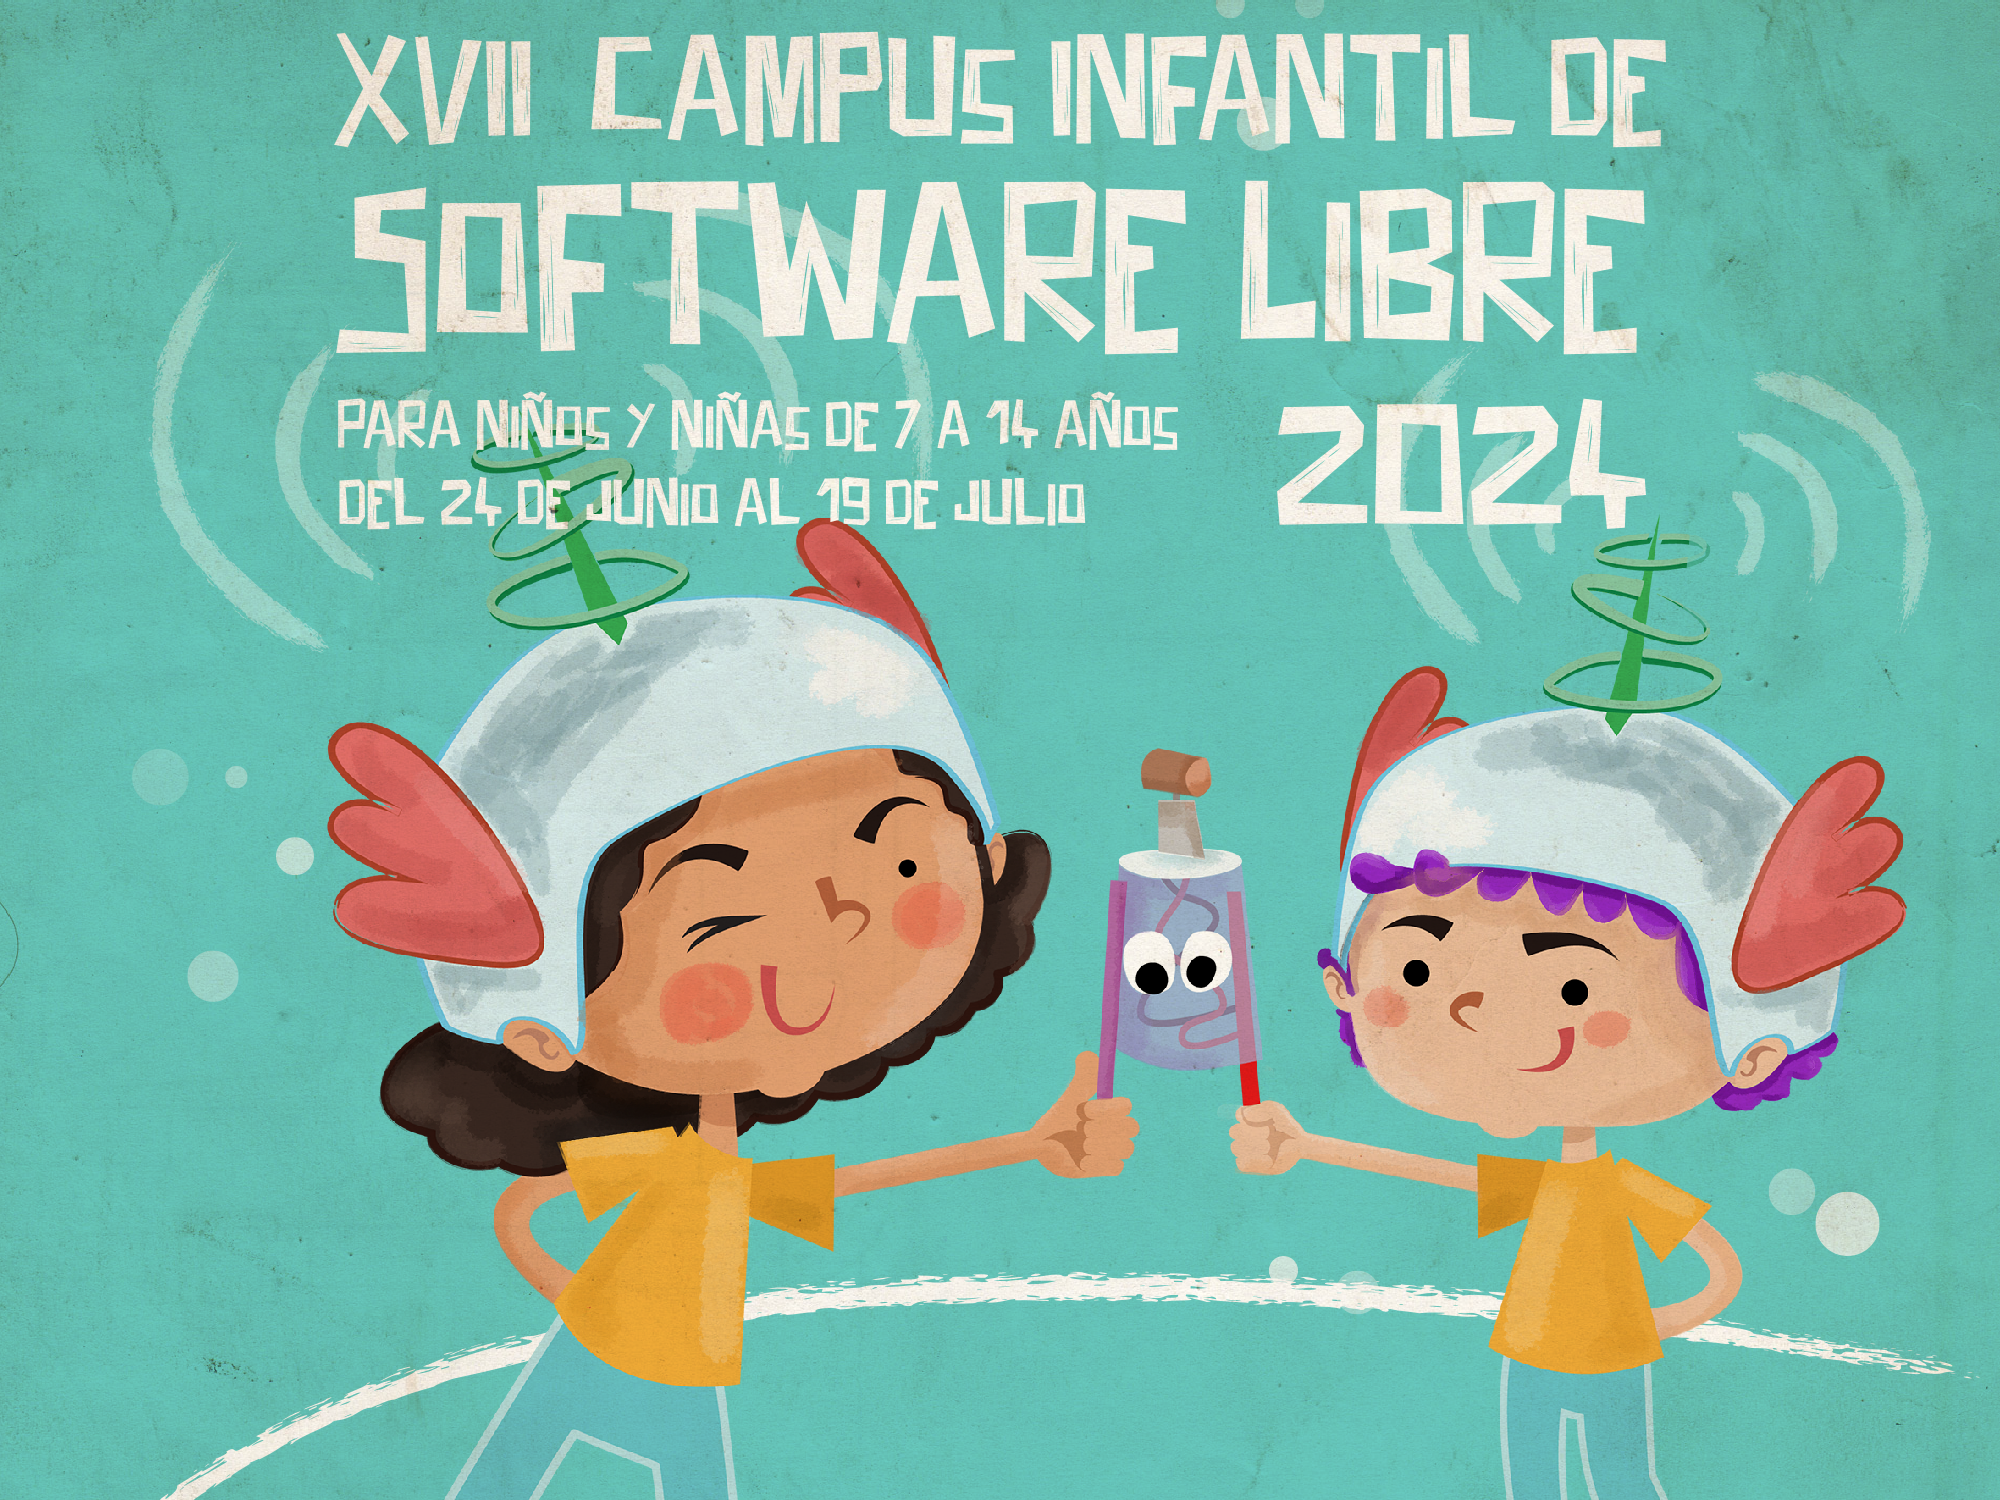 Abierta la inscripción para la XVII edición del Campus Infantil de Software Libre